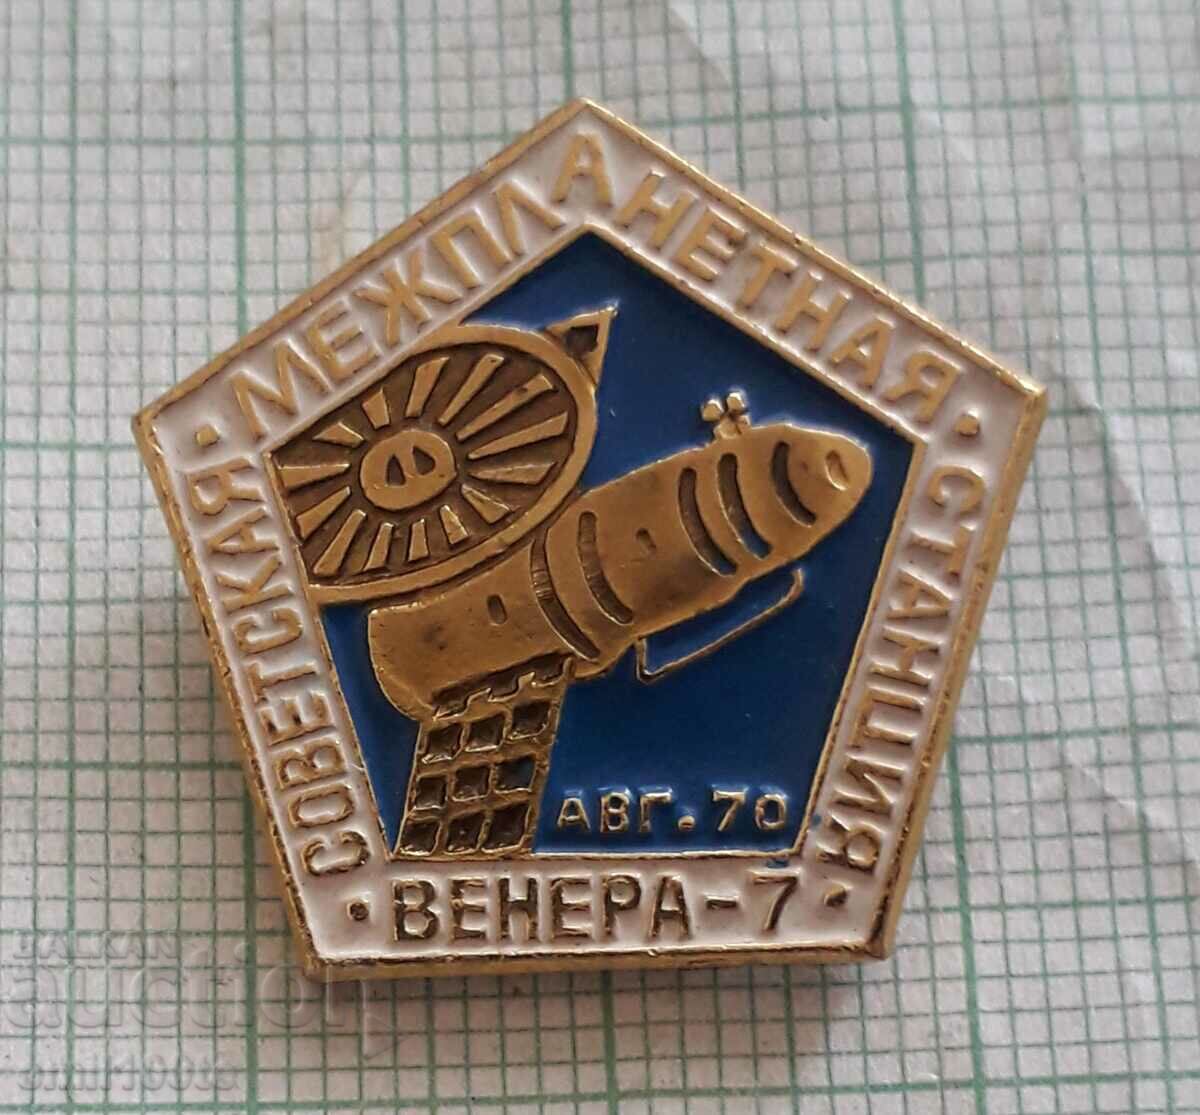 Значка- Венера 7 Съветска междупланета станция август 1970 г